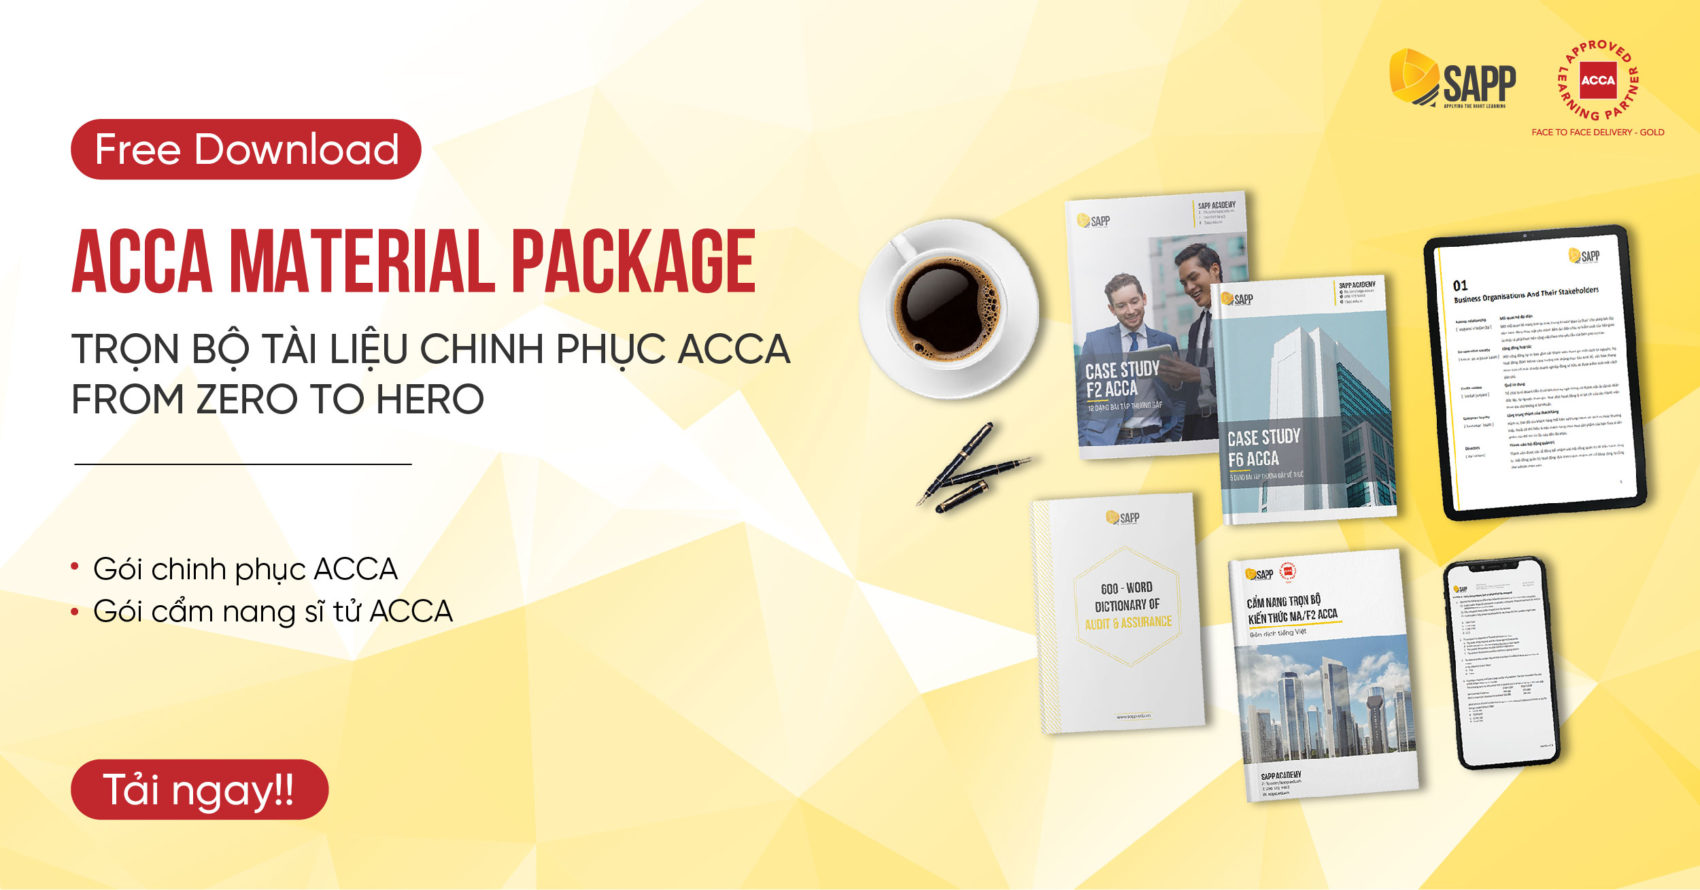 ACCA Material Package: Trọn bộ tài liệu chinh phục ACCA